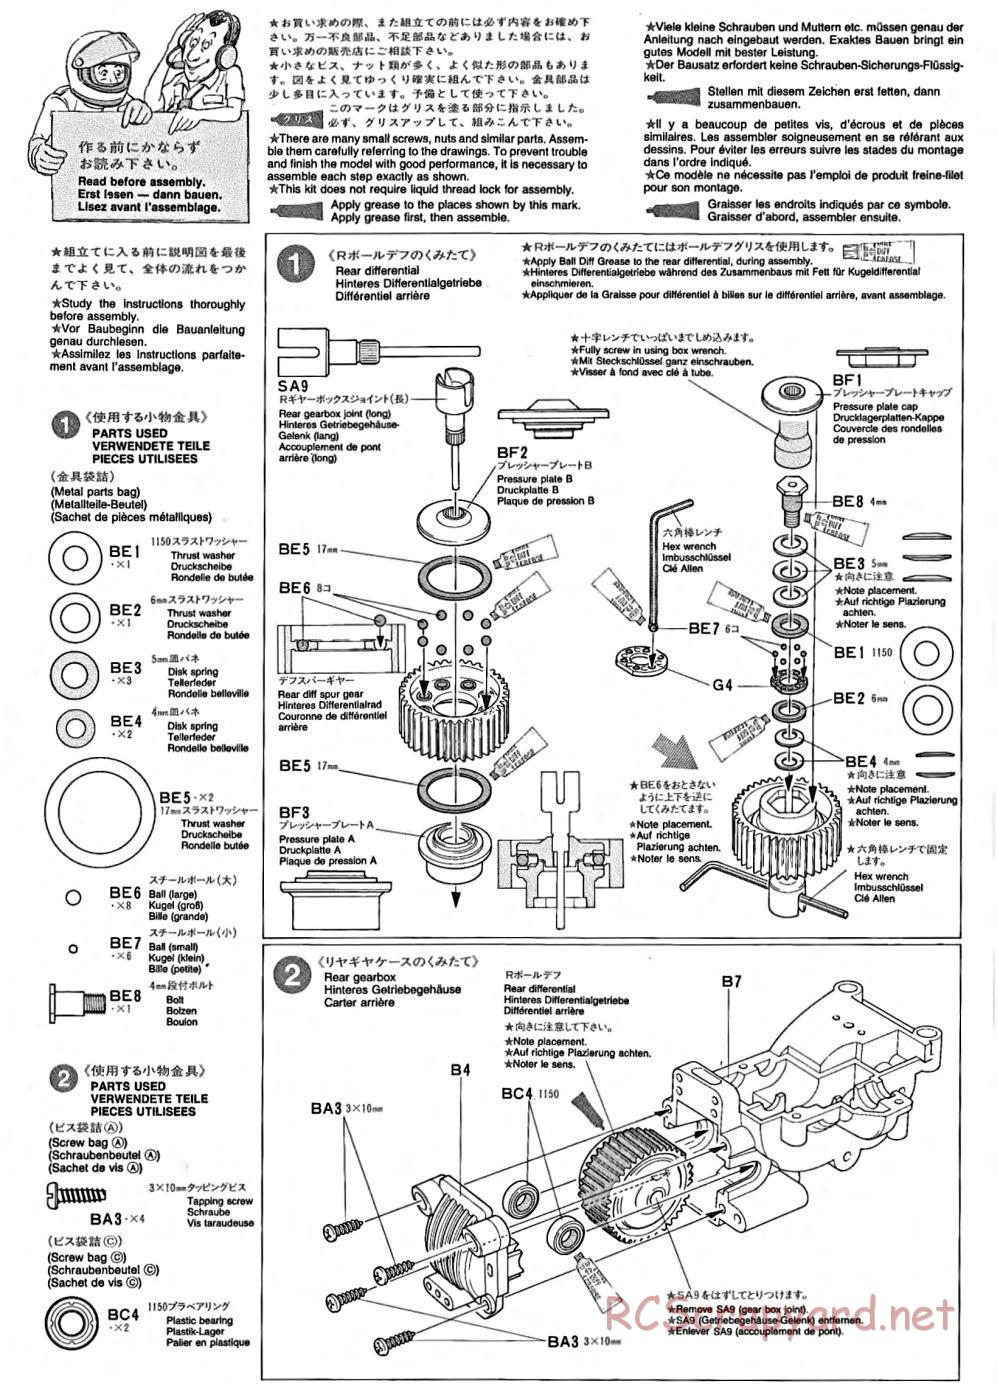 Tamiya - TA-02 Chassis - Manual - Page 1